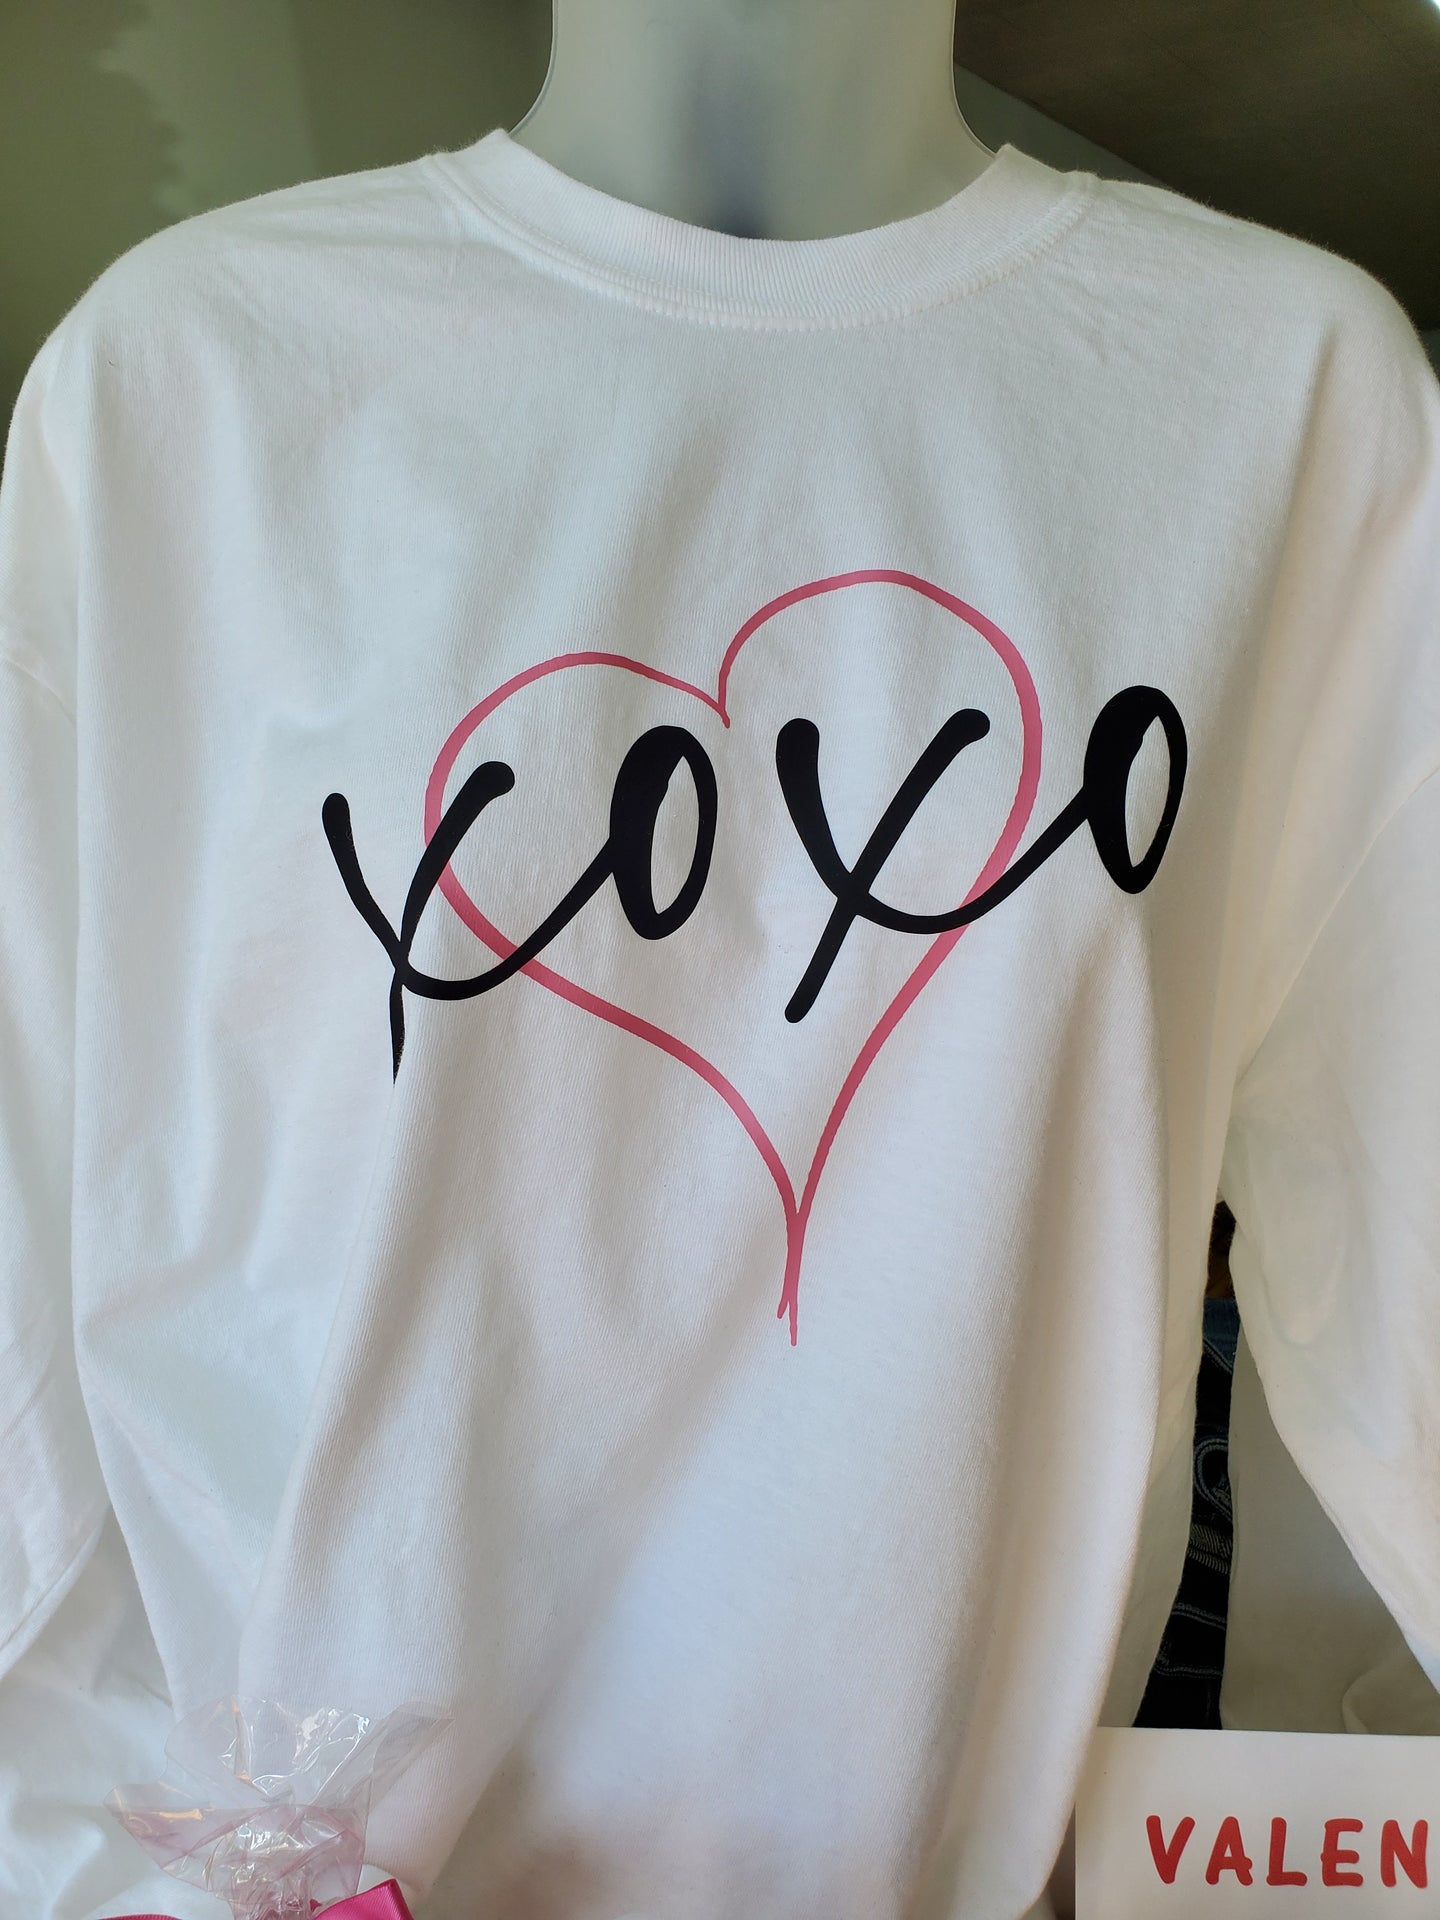 XOXO Long Sleeve Shirt - Choose Color